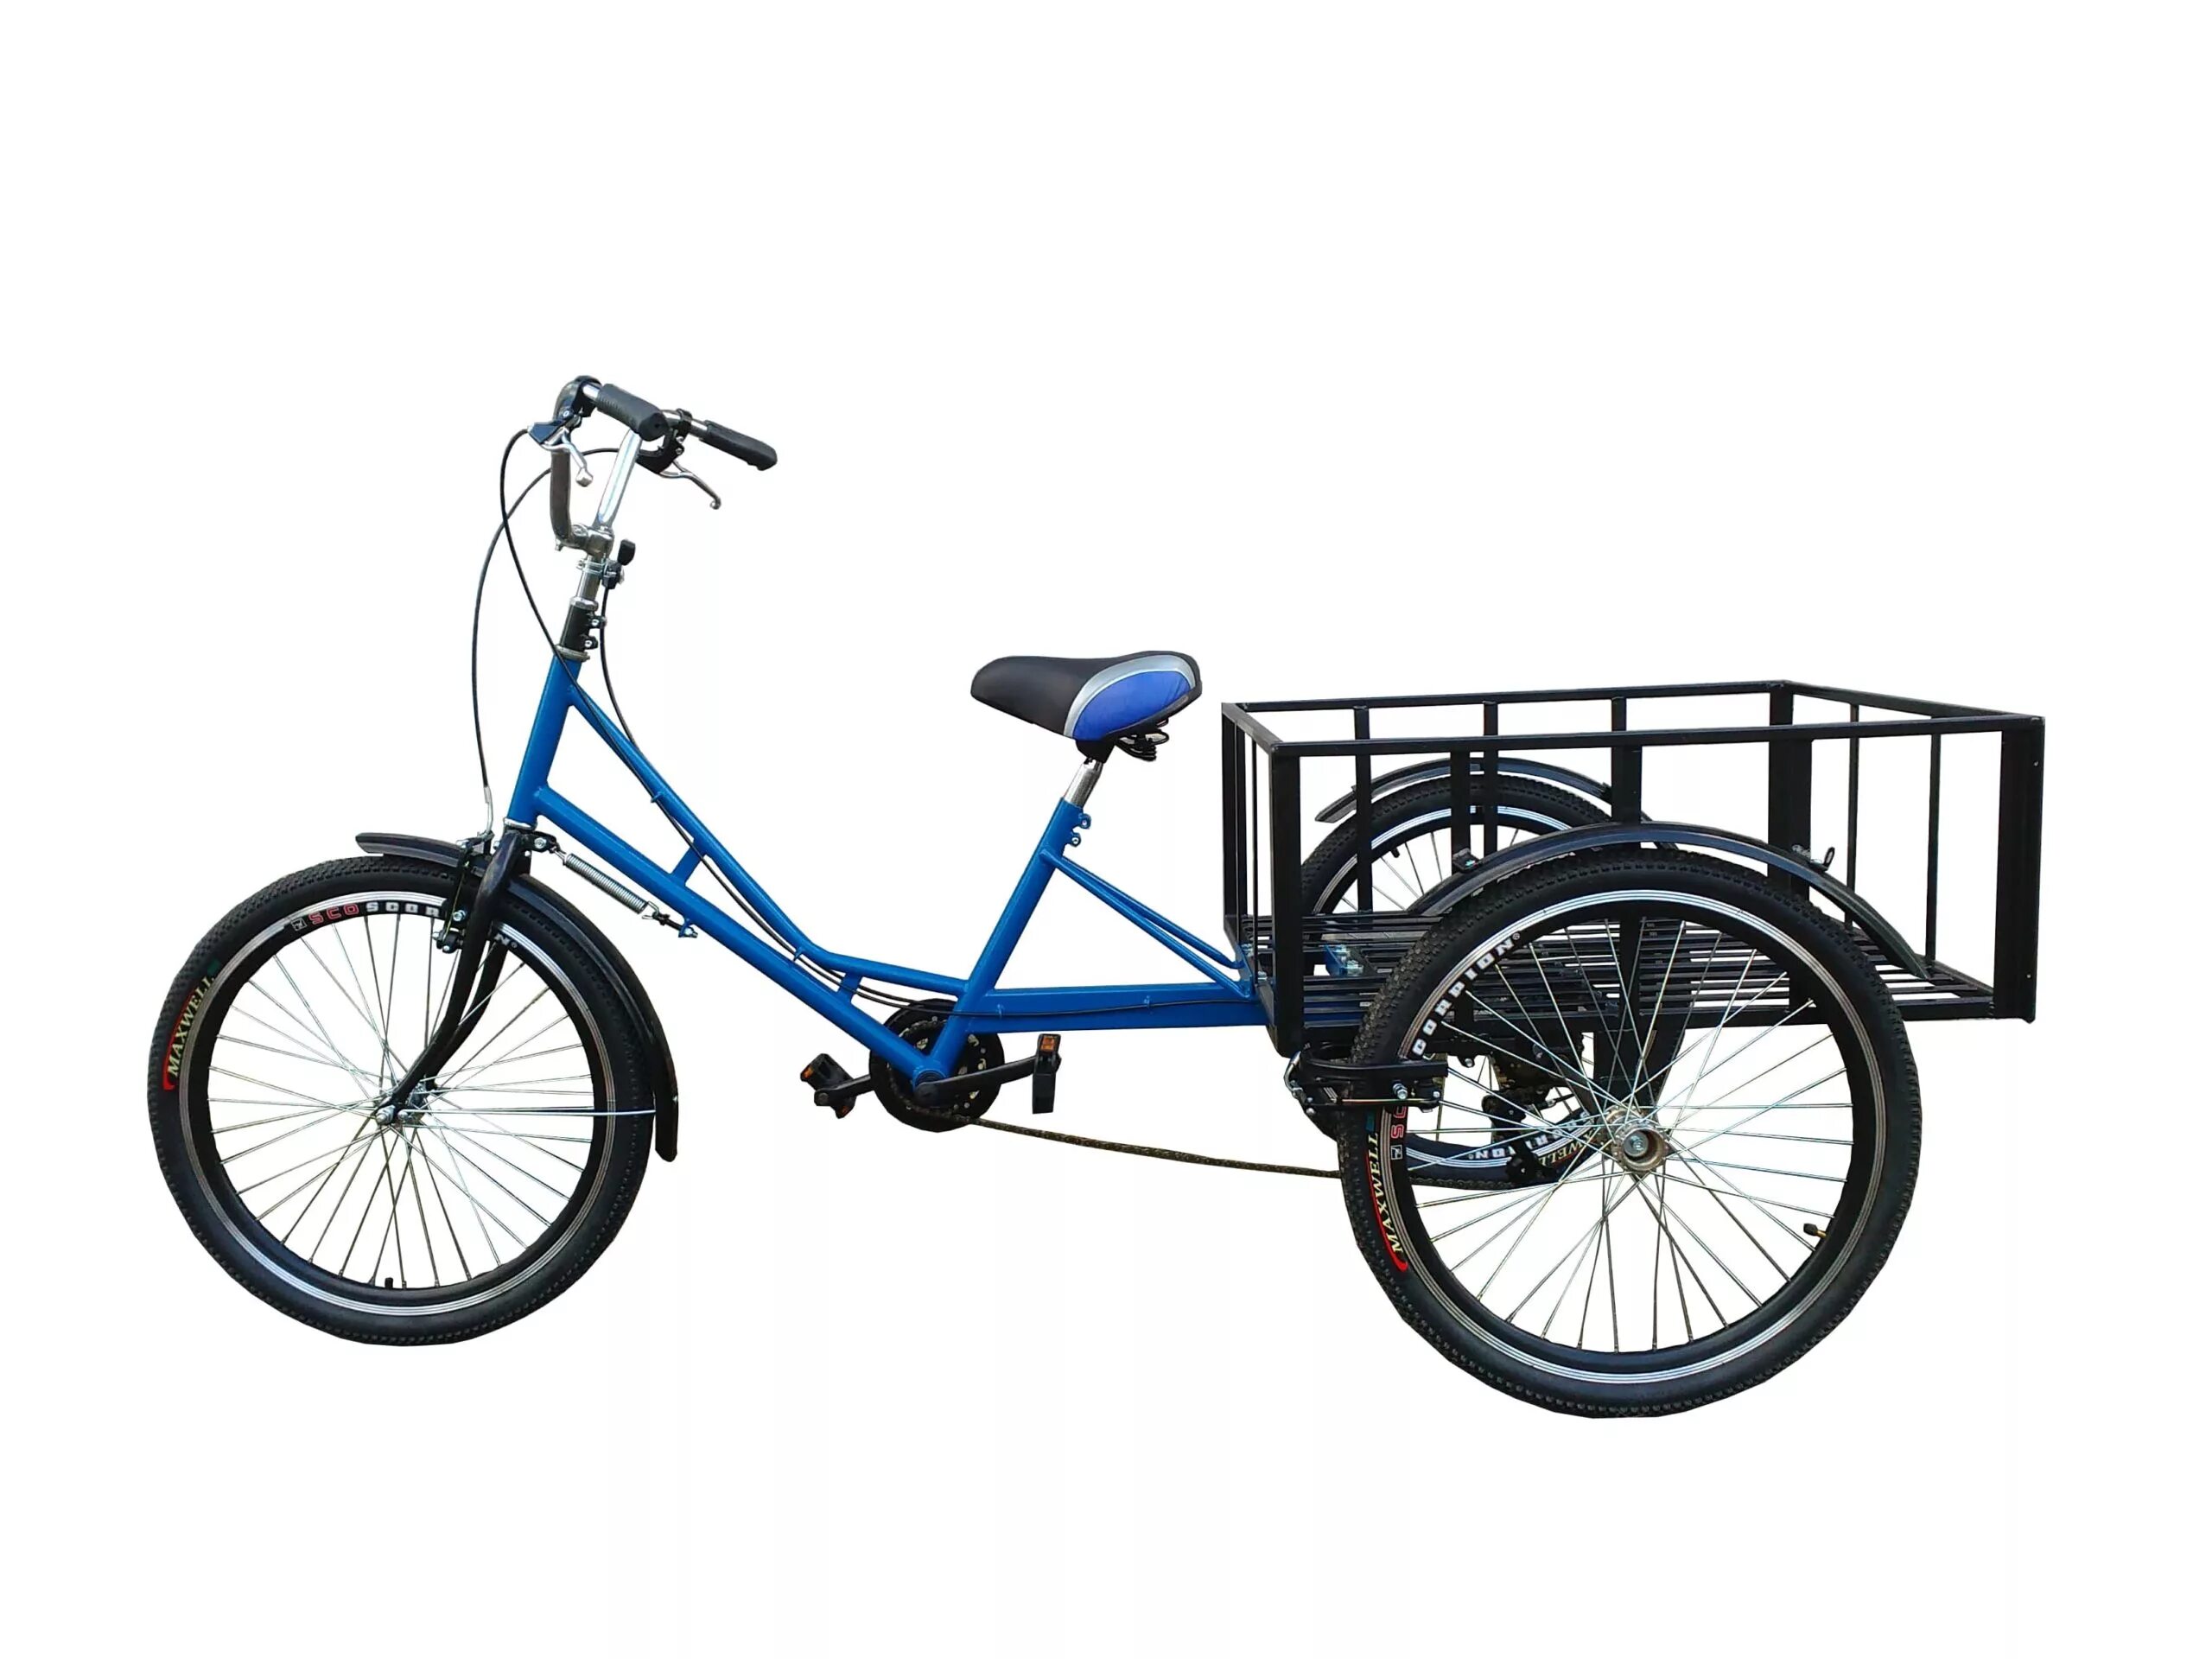 Bikes bikes трехколесный. Велосипед грузовой трехколесный volta карго. Грузовой велосипед ИЖ карго. Грузовой трёхколёсный электровелосипед v "карго". Велорикша стелс.